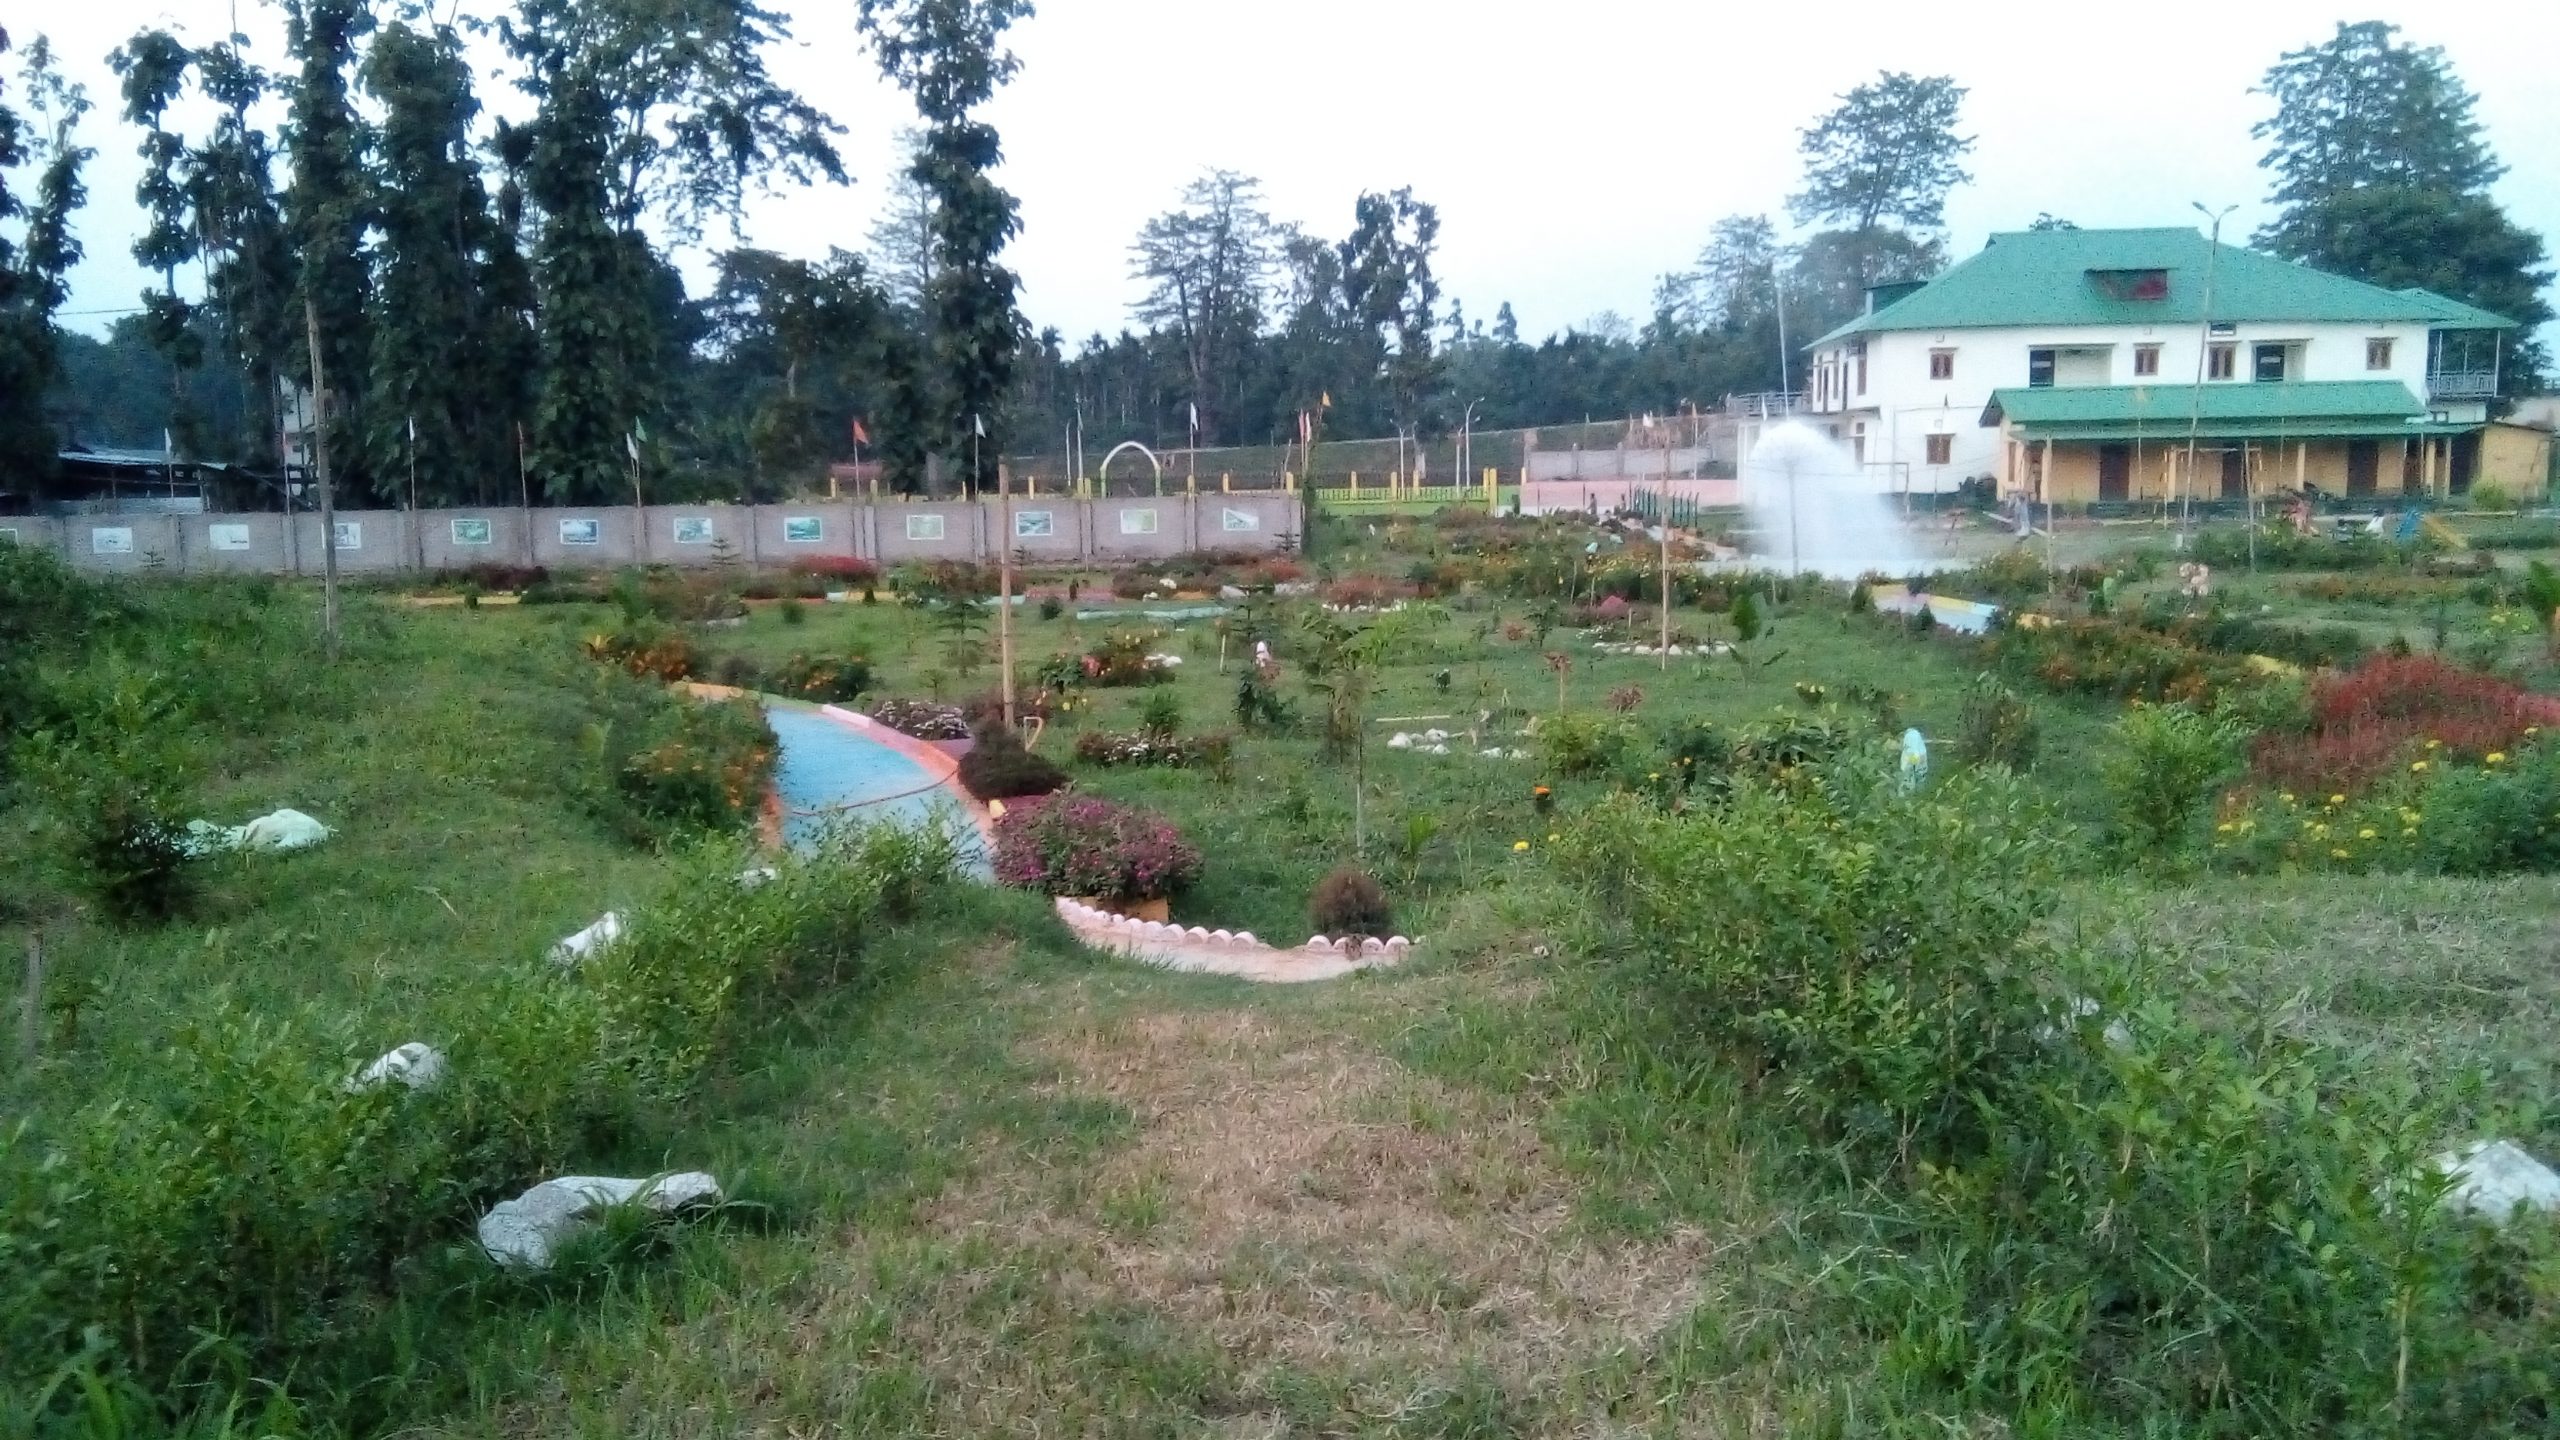 Tumpreng Park in Assam